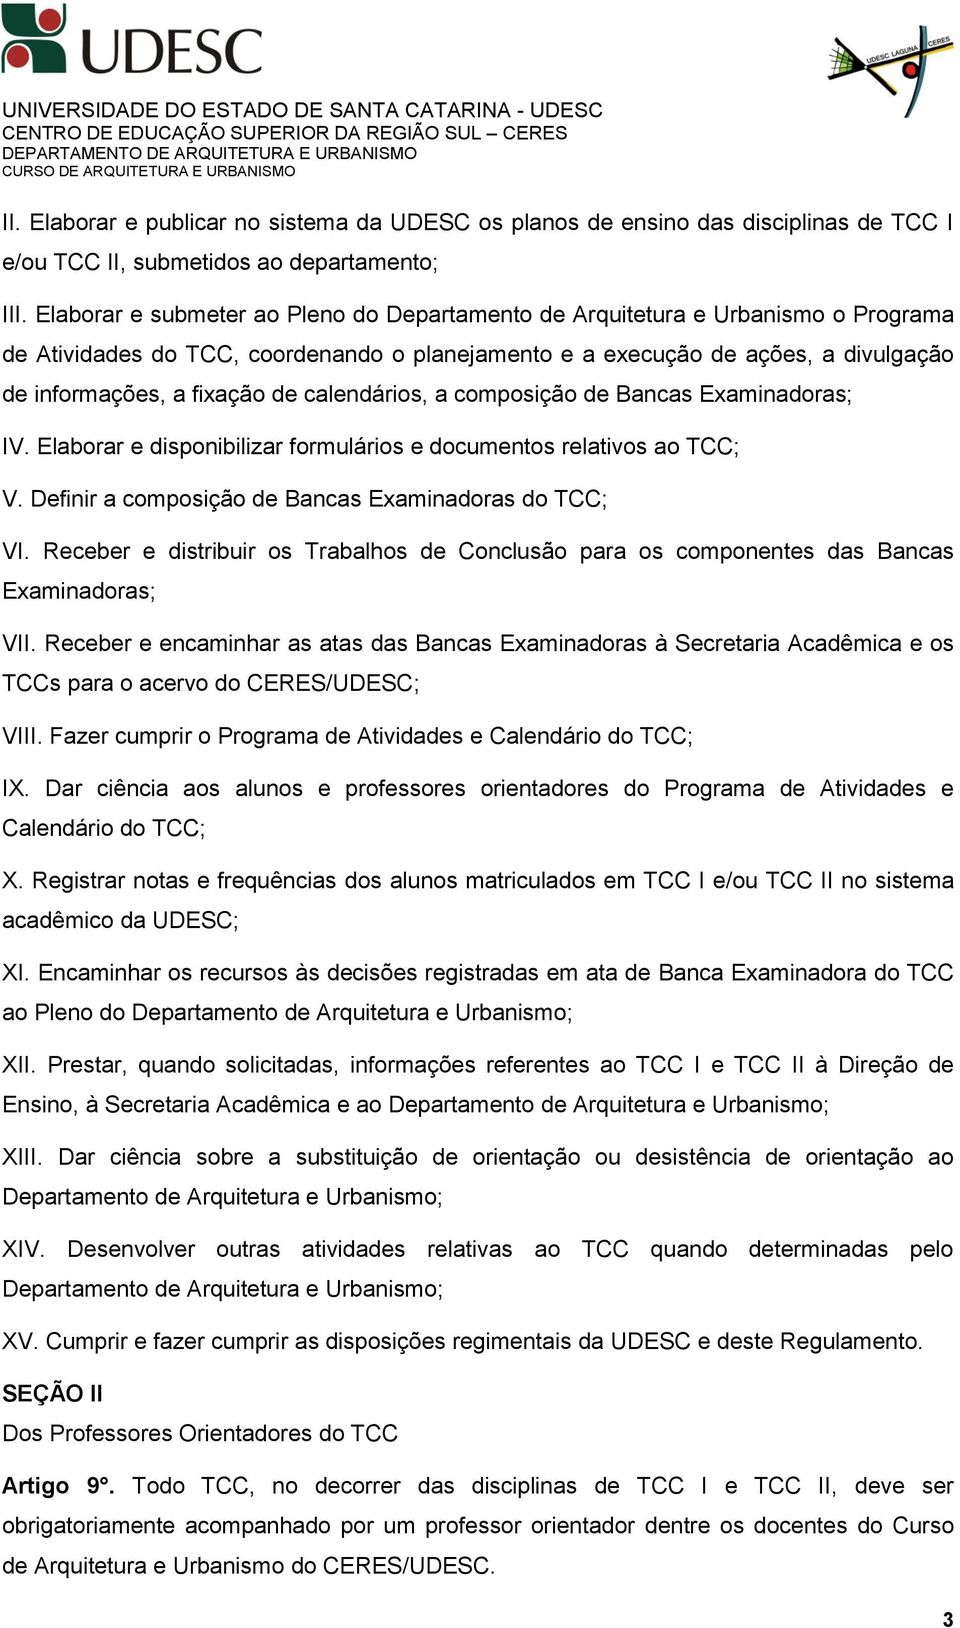 calendários, a composição de Bancas Examinadoras; IV. Elaborar e disponibilizar formulários e documentos relativos ao TCC; V. Definir a composição de Bancas Examinadoras do TCC; VI.